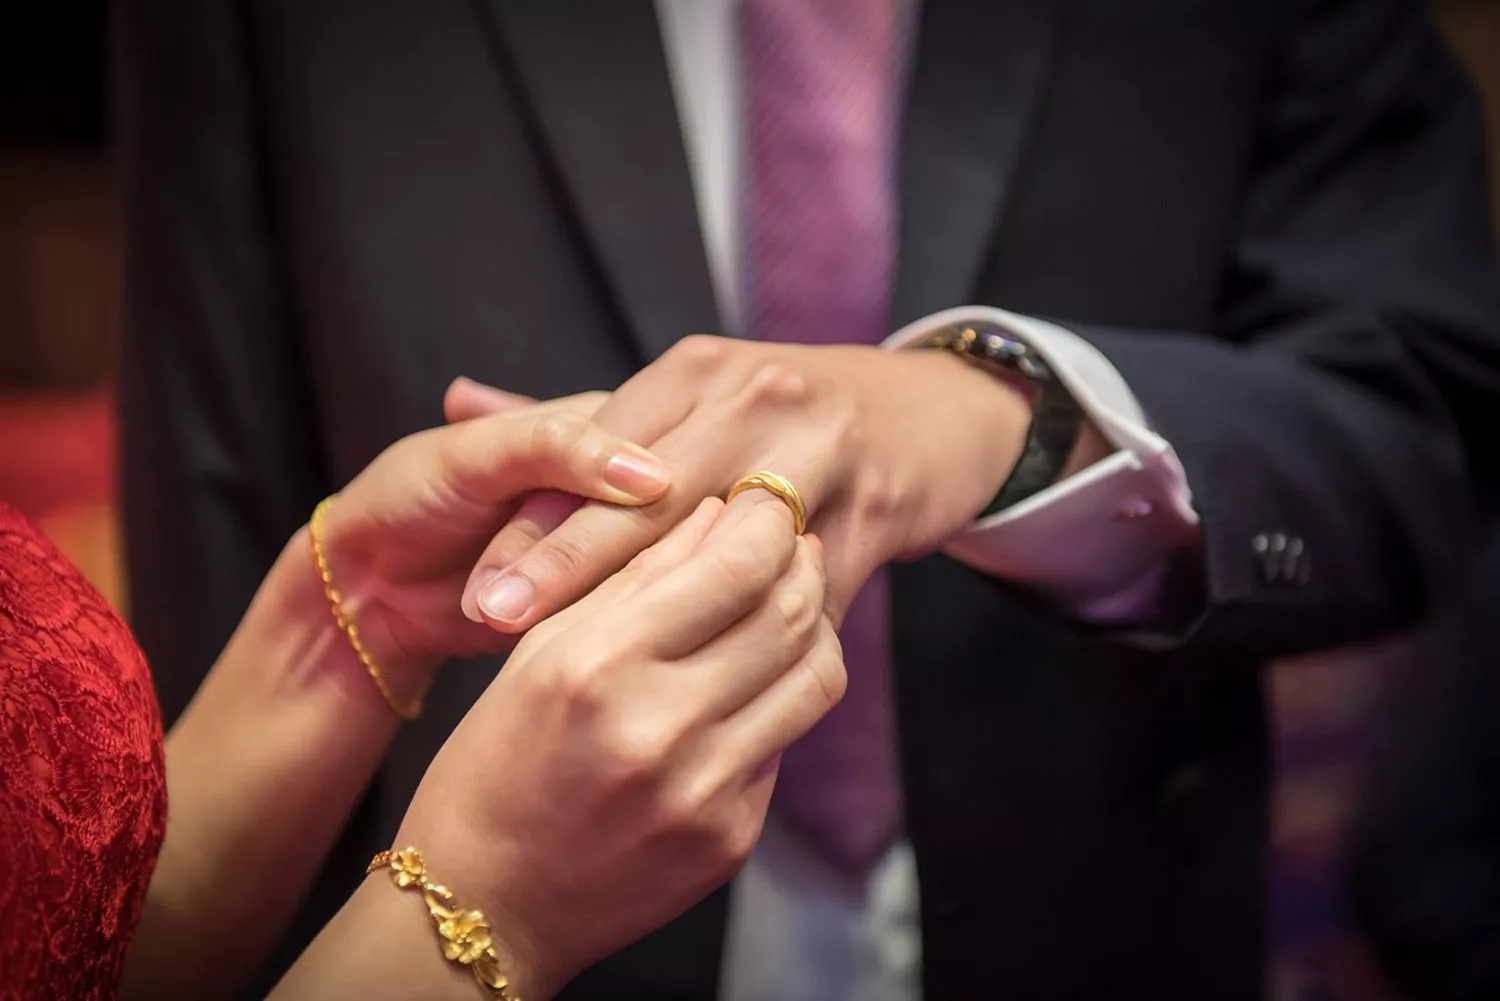 訂婚儀式交換戒指象徵永結同心。